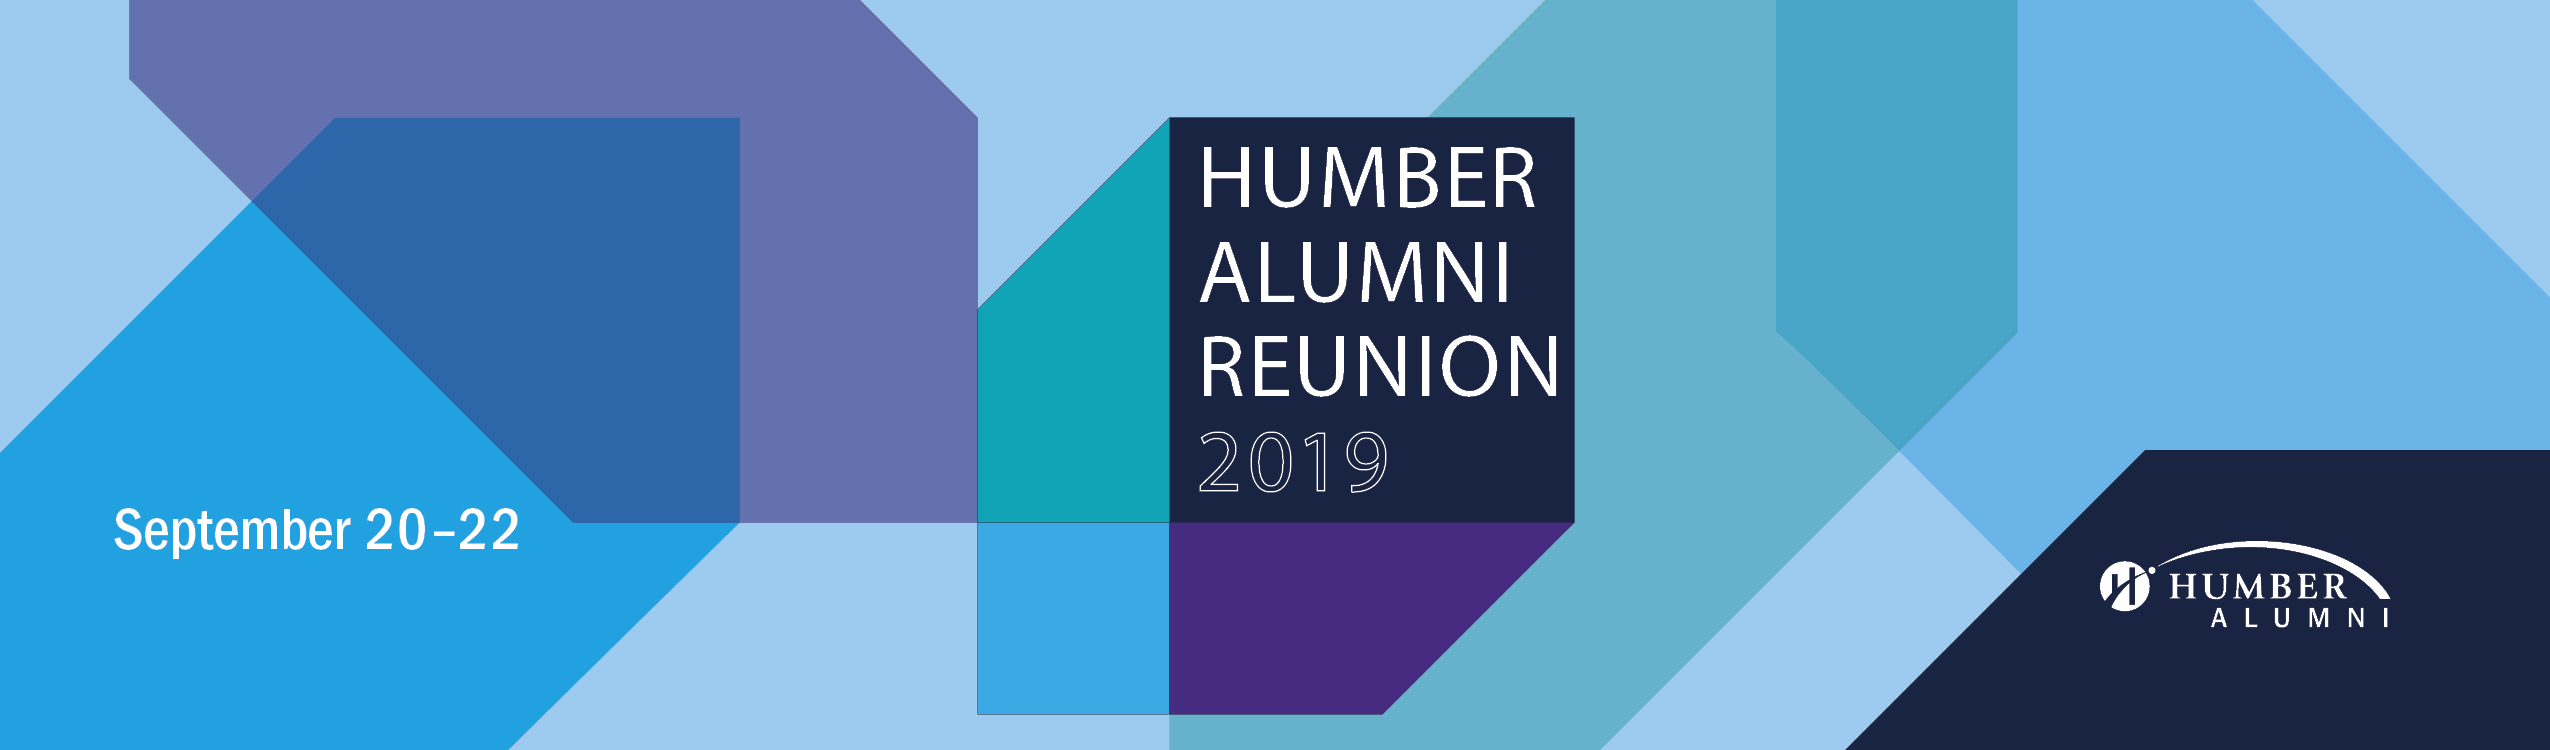 humber alumni reunion 2019 sept 20-22